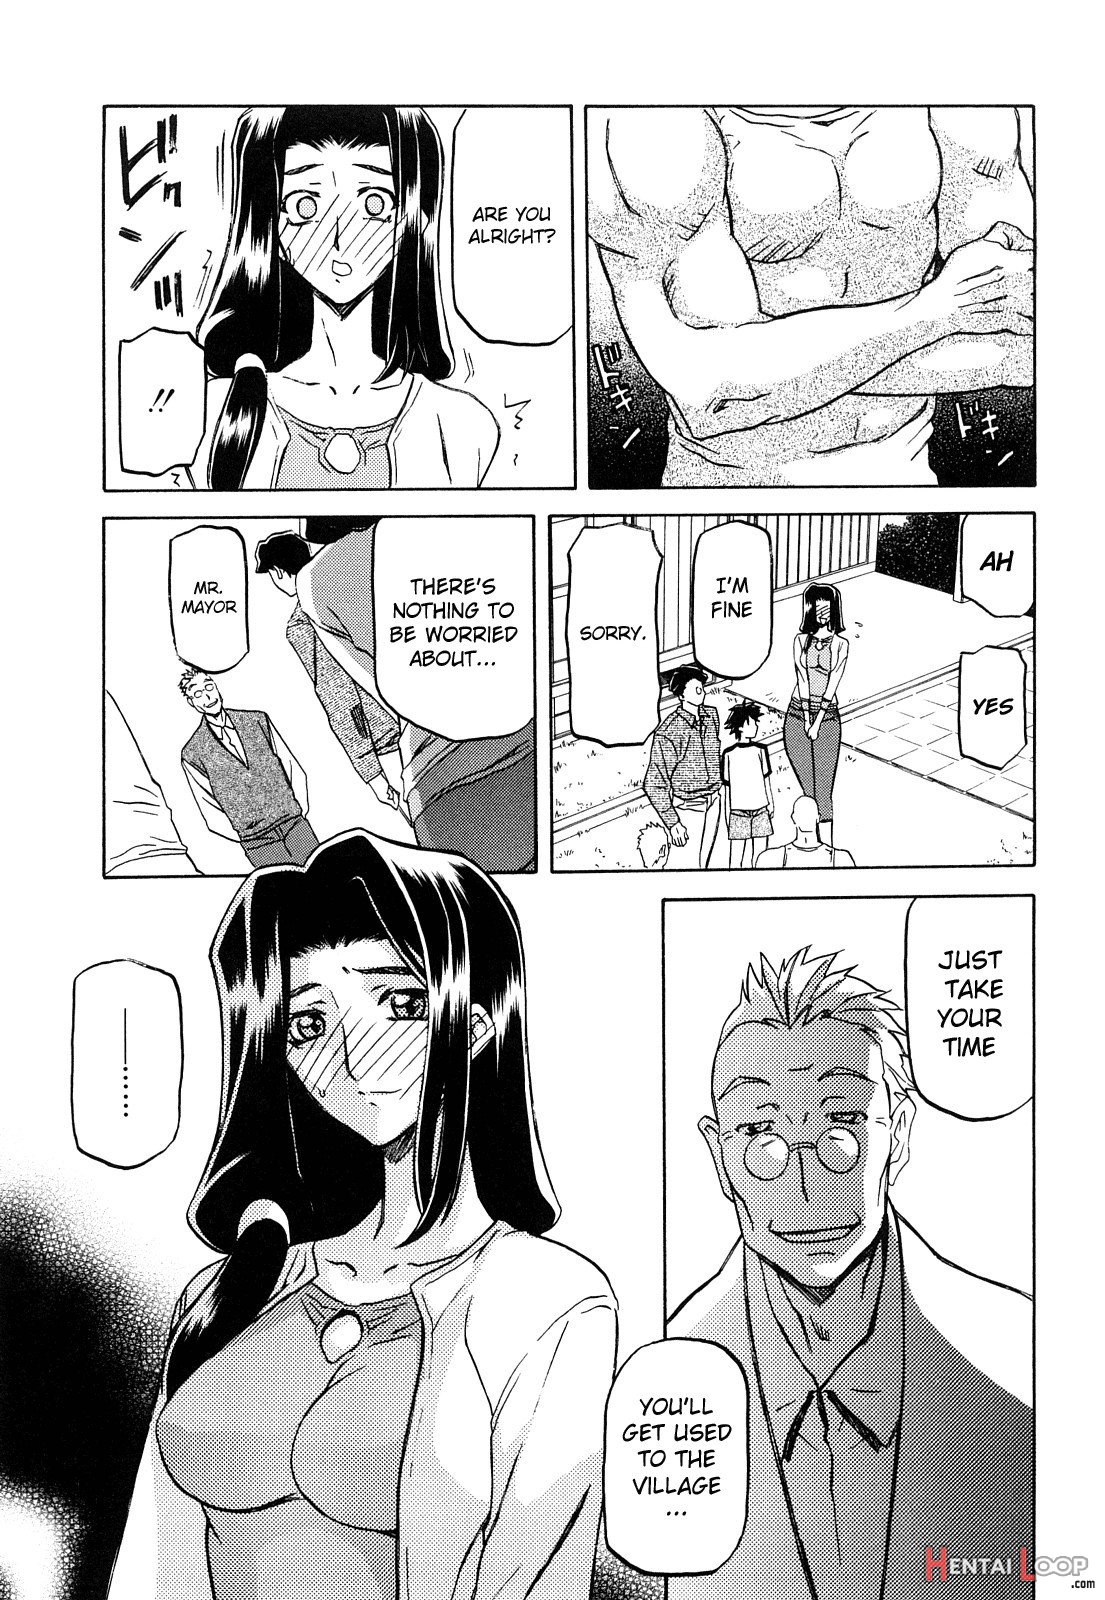 Sayuki No Sato page 32